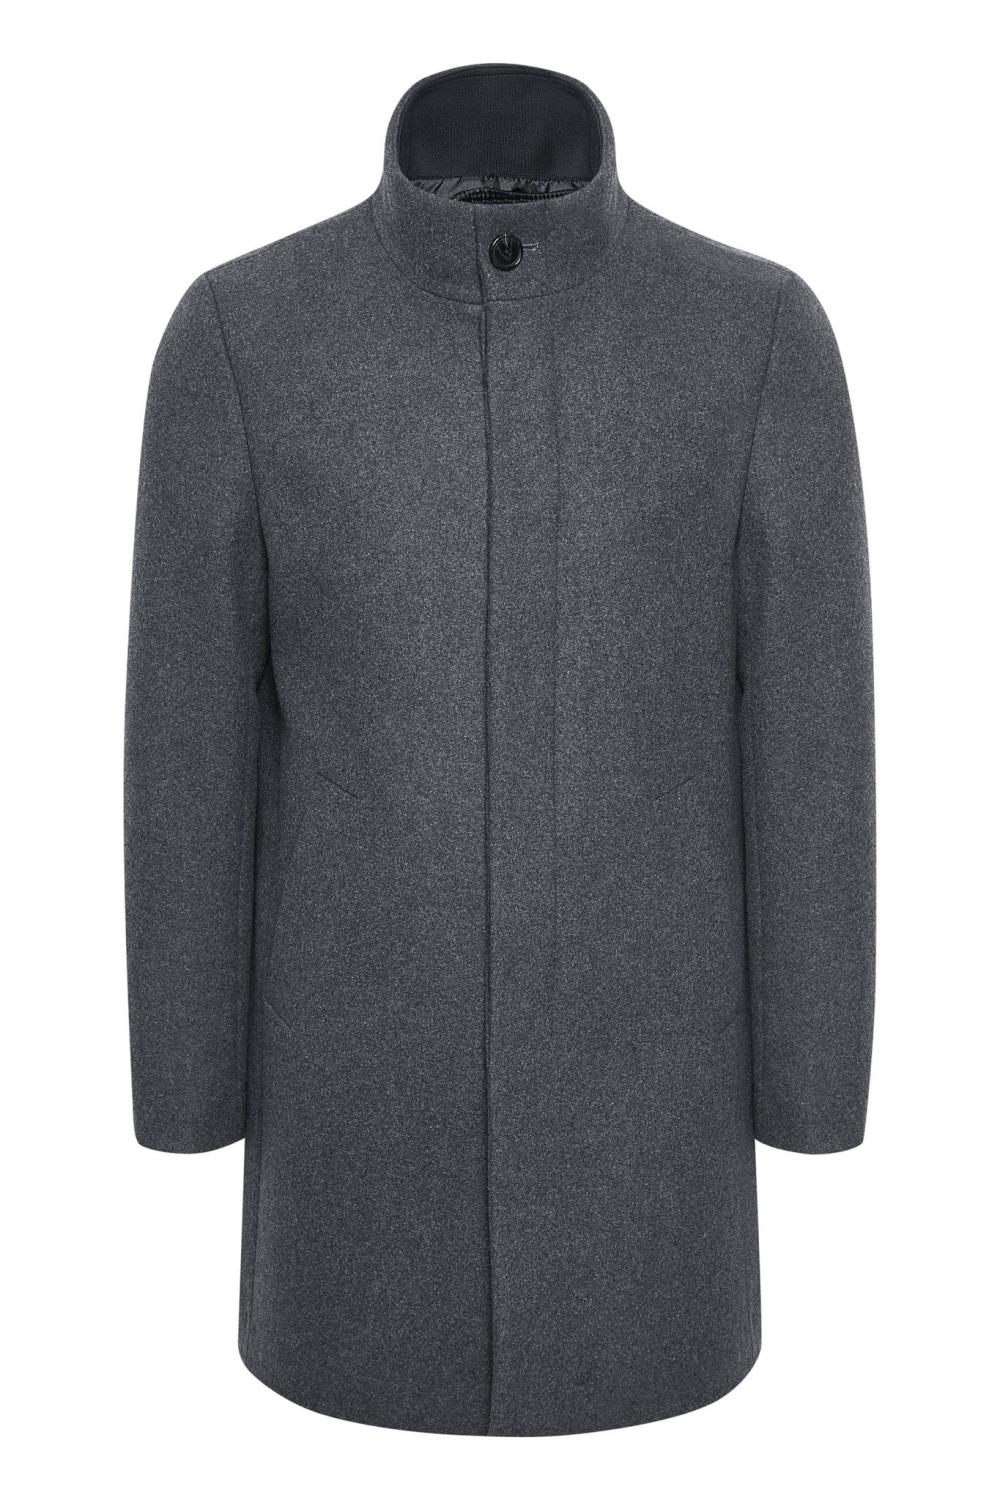 Matinique Harvey Classic Wool coat - Medium Grey Melange